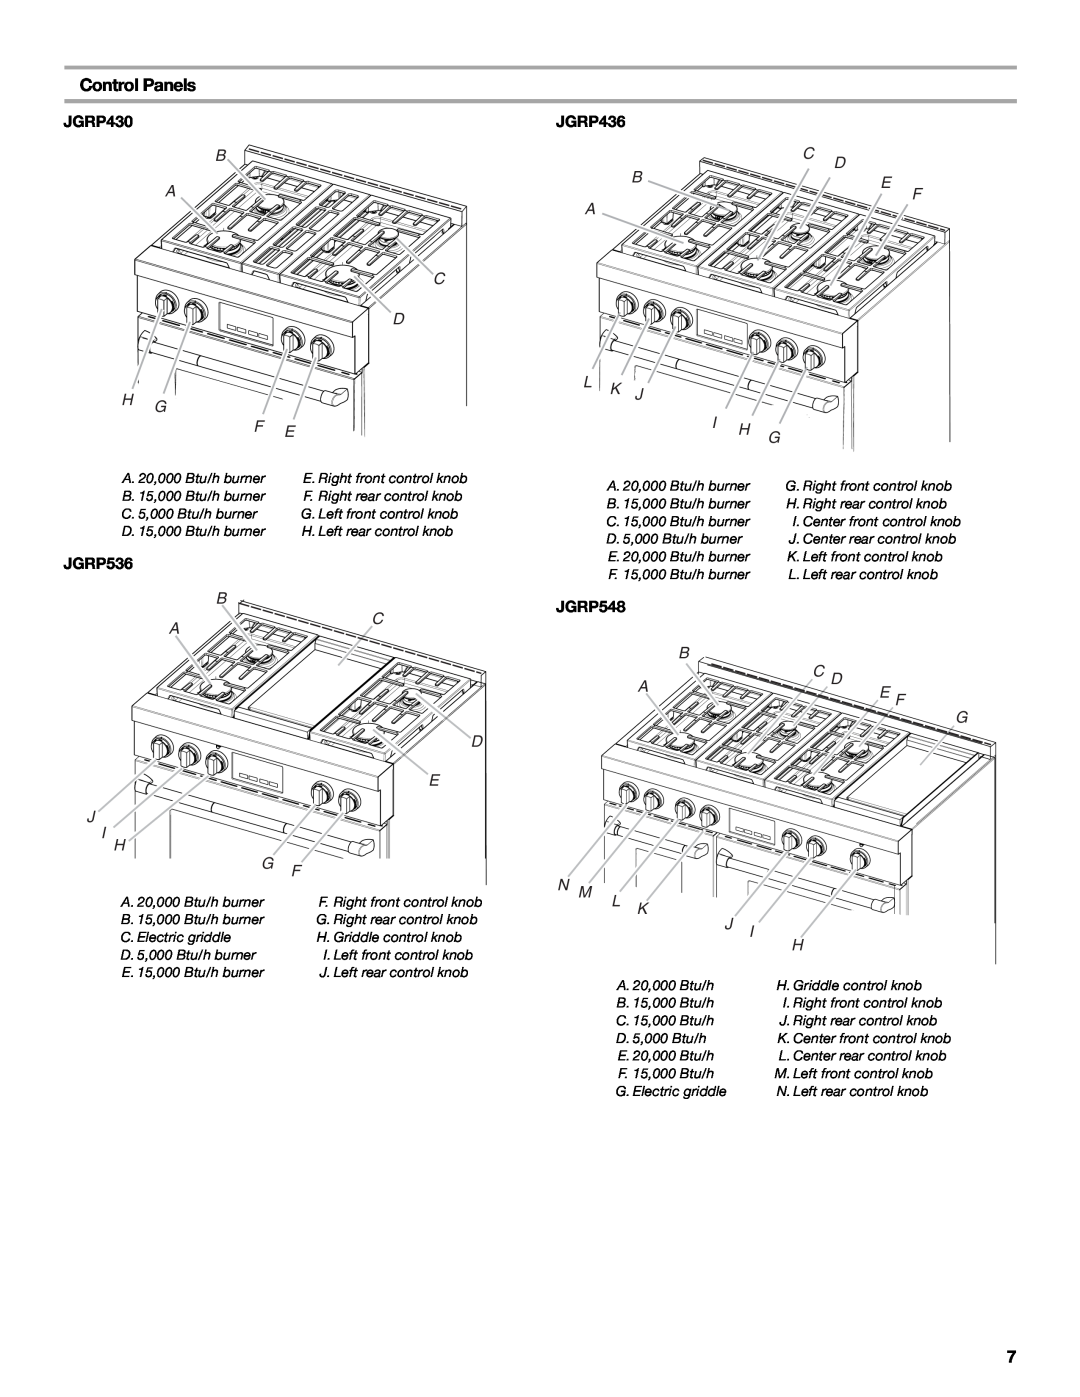 Jenn-Air JGRP436 manual Control Panels, JGRP430, JGRP536, L K J I H G, JGRP548, B C D A E F, N M L K J H 